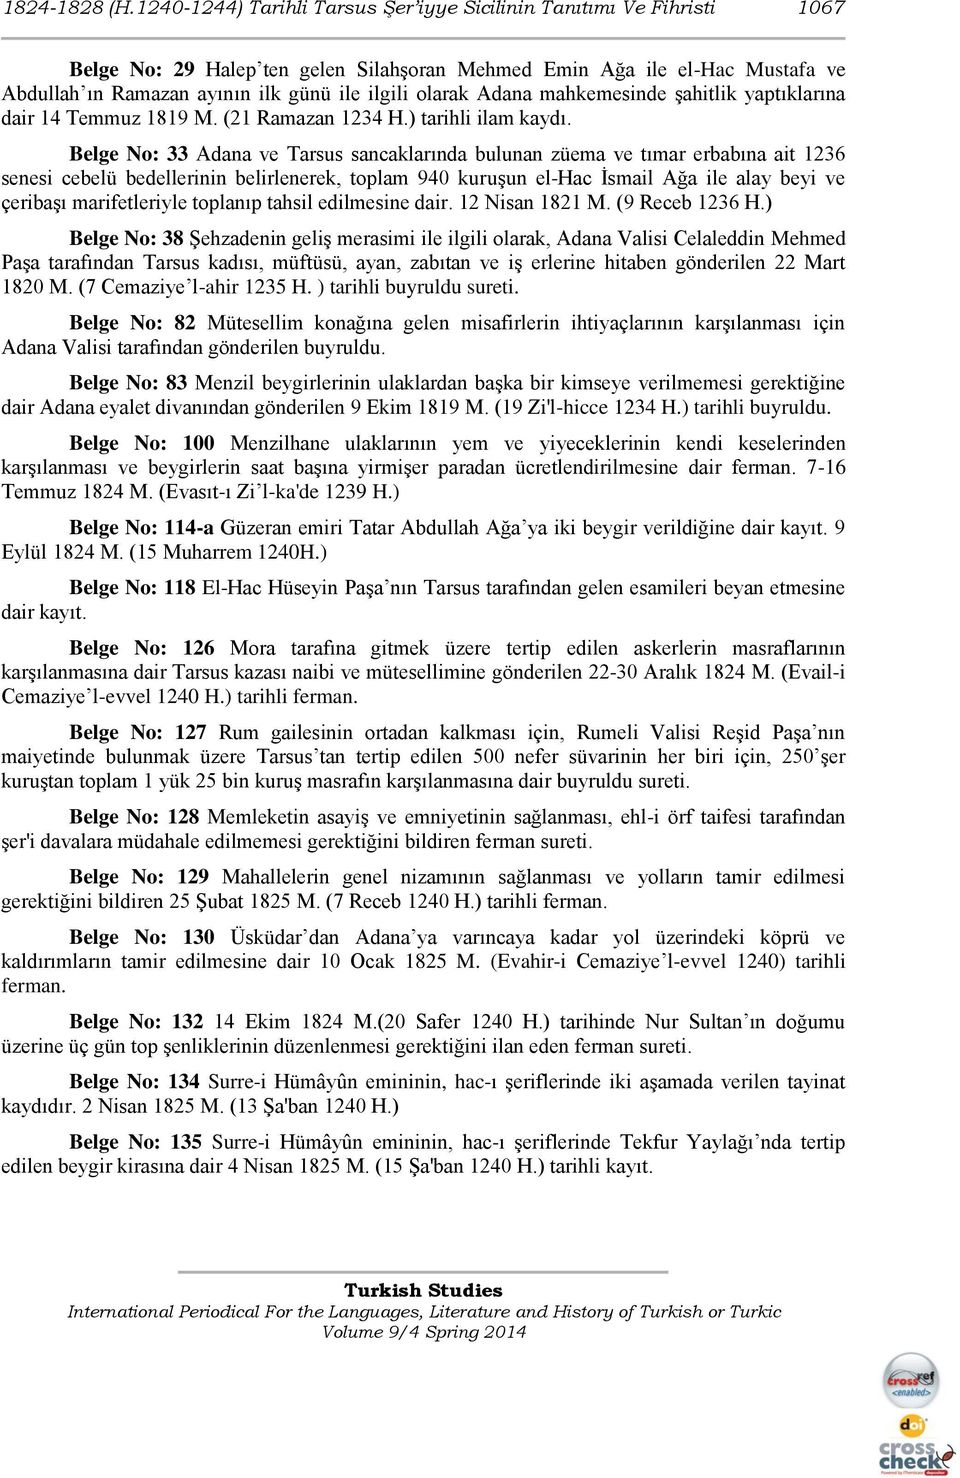 olarak Adana mahkemesinde şahitlik yaptıklarına dair 14 Temmuz 1819 M. (21 Ramazan 1234 H.) tarihli ilam kaydı.